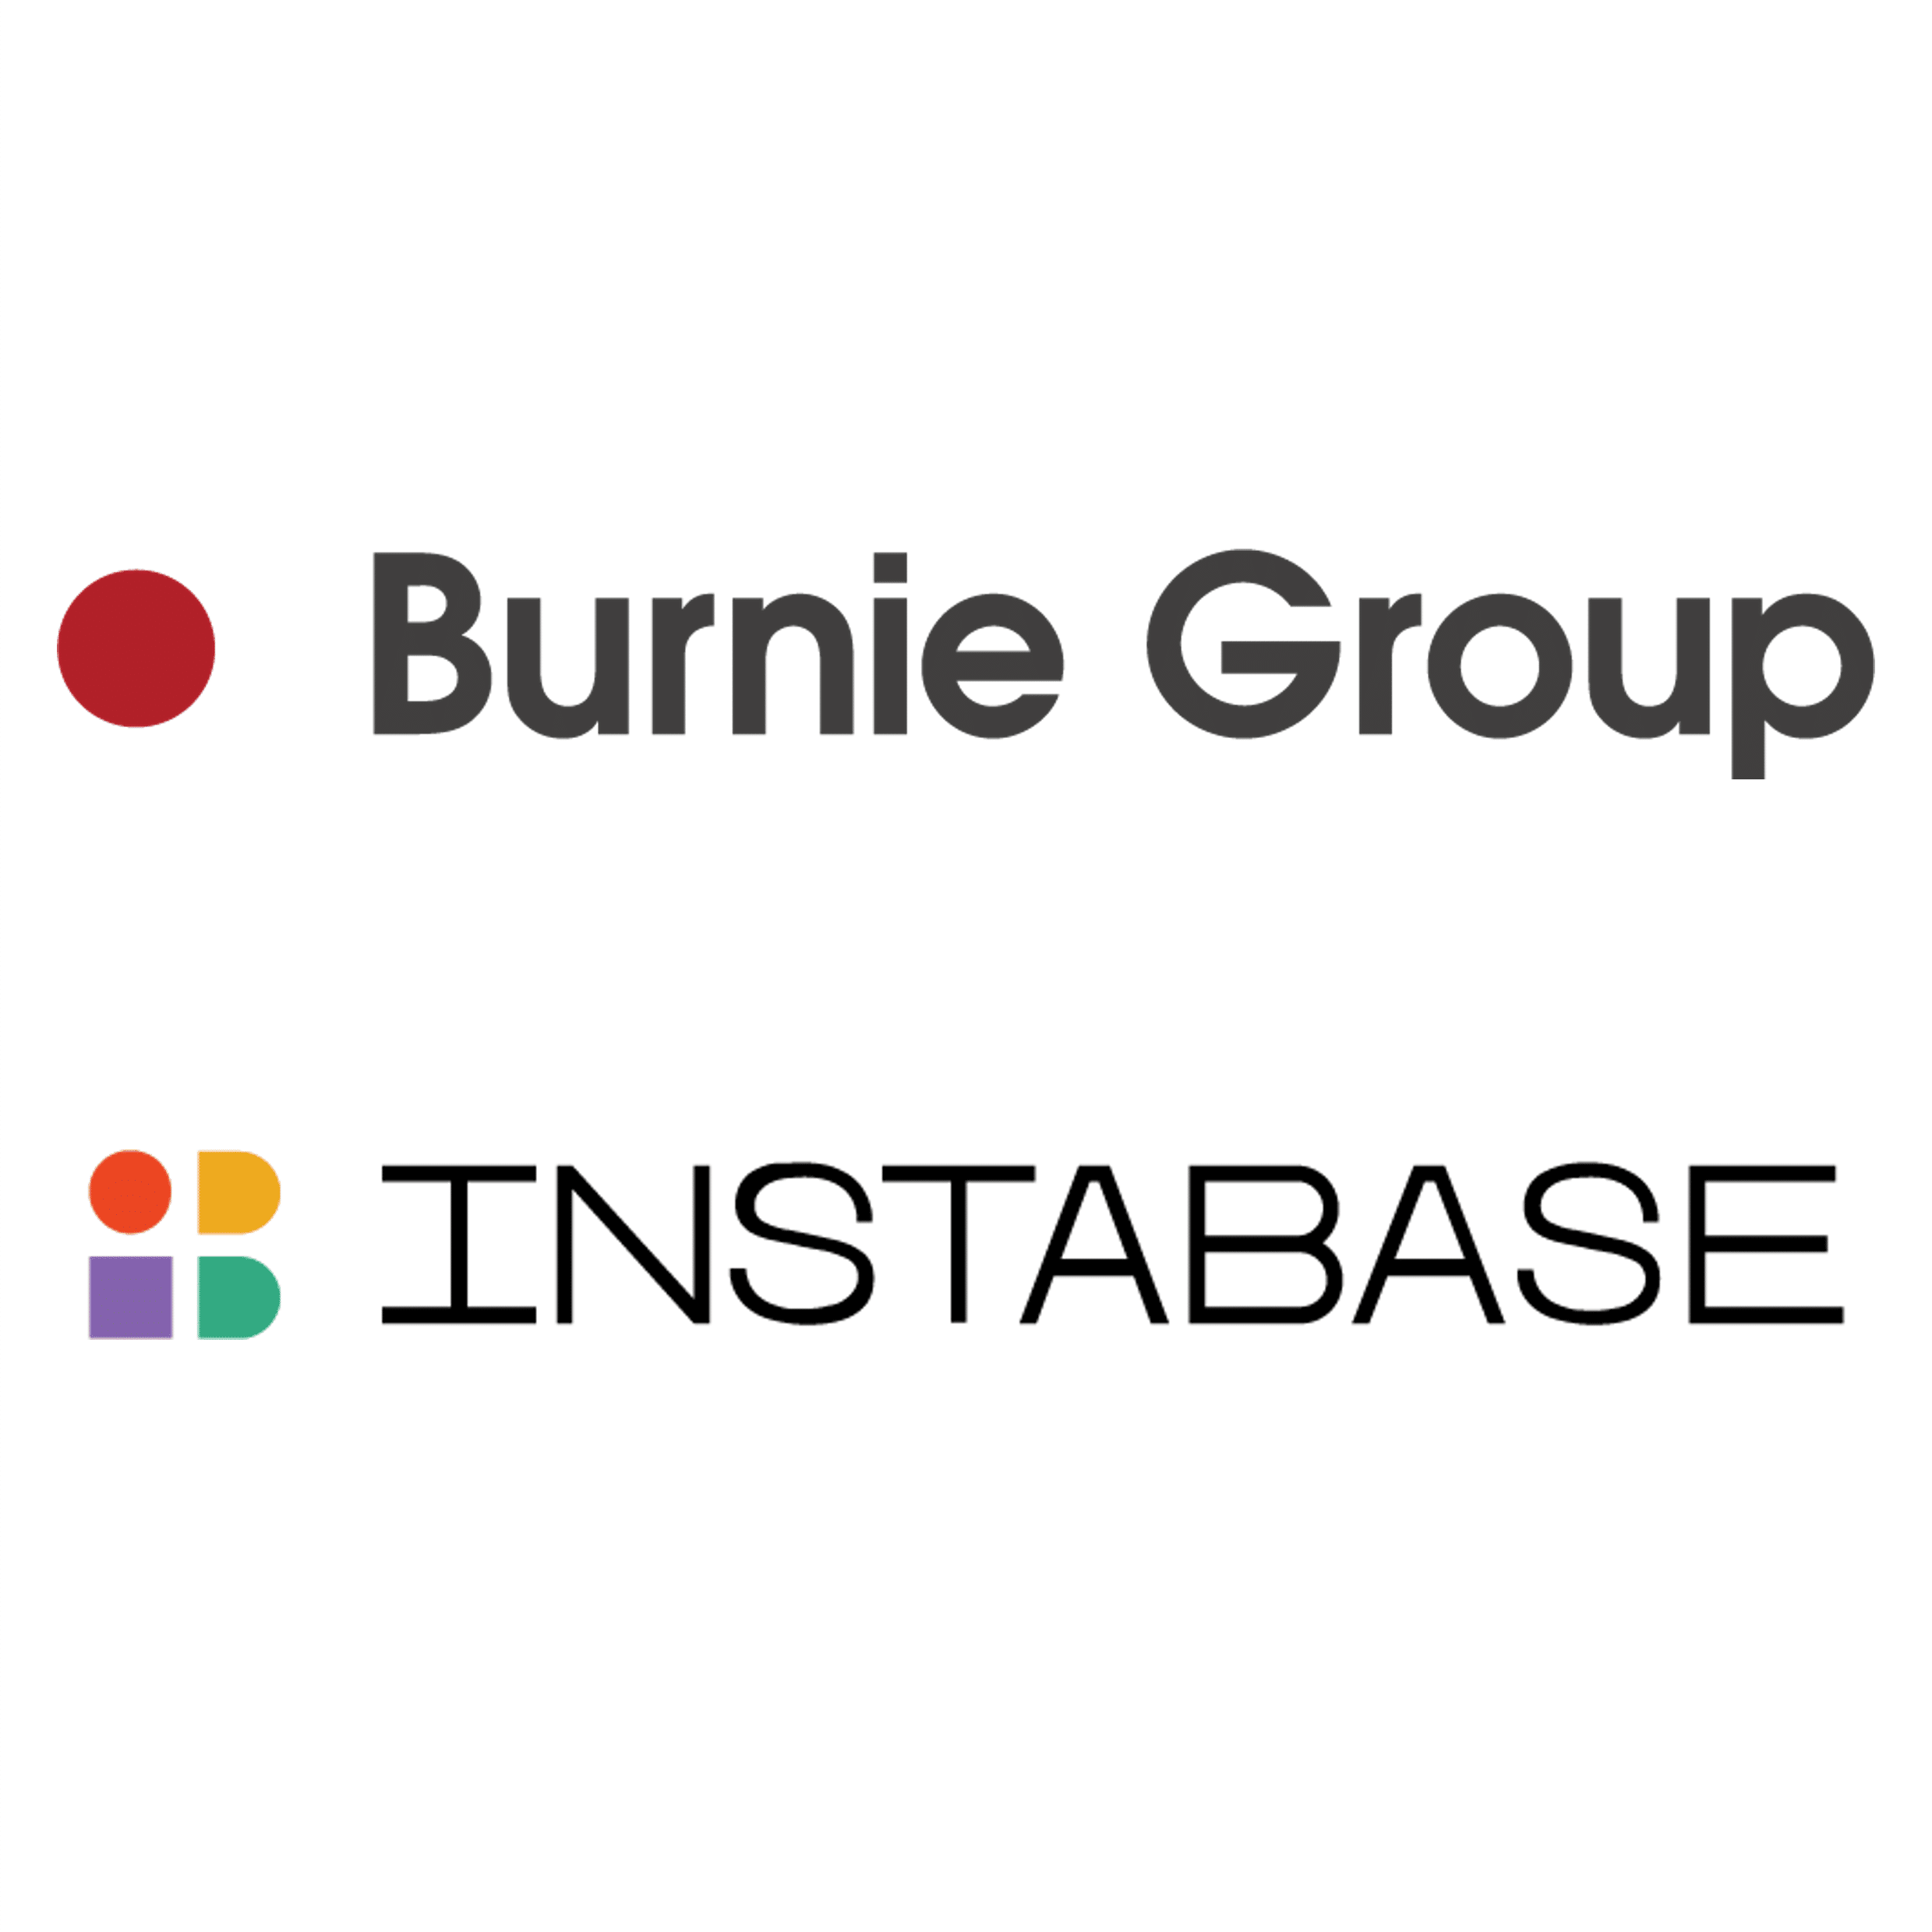 Burnie Group Instabase logos